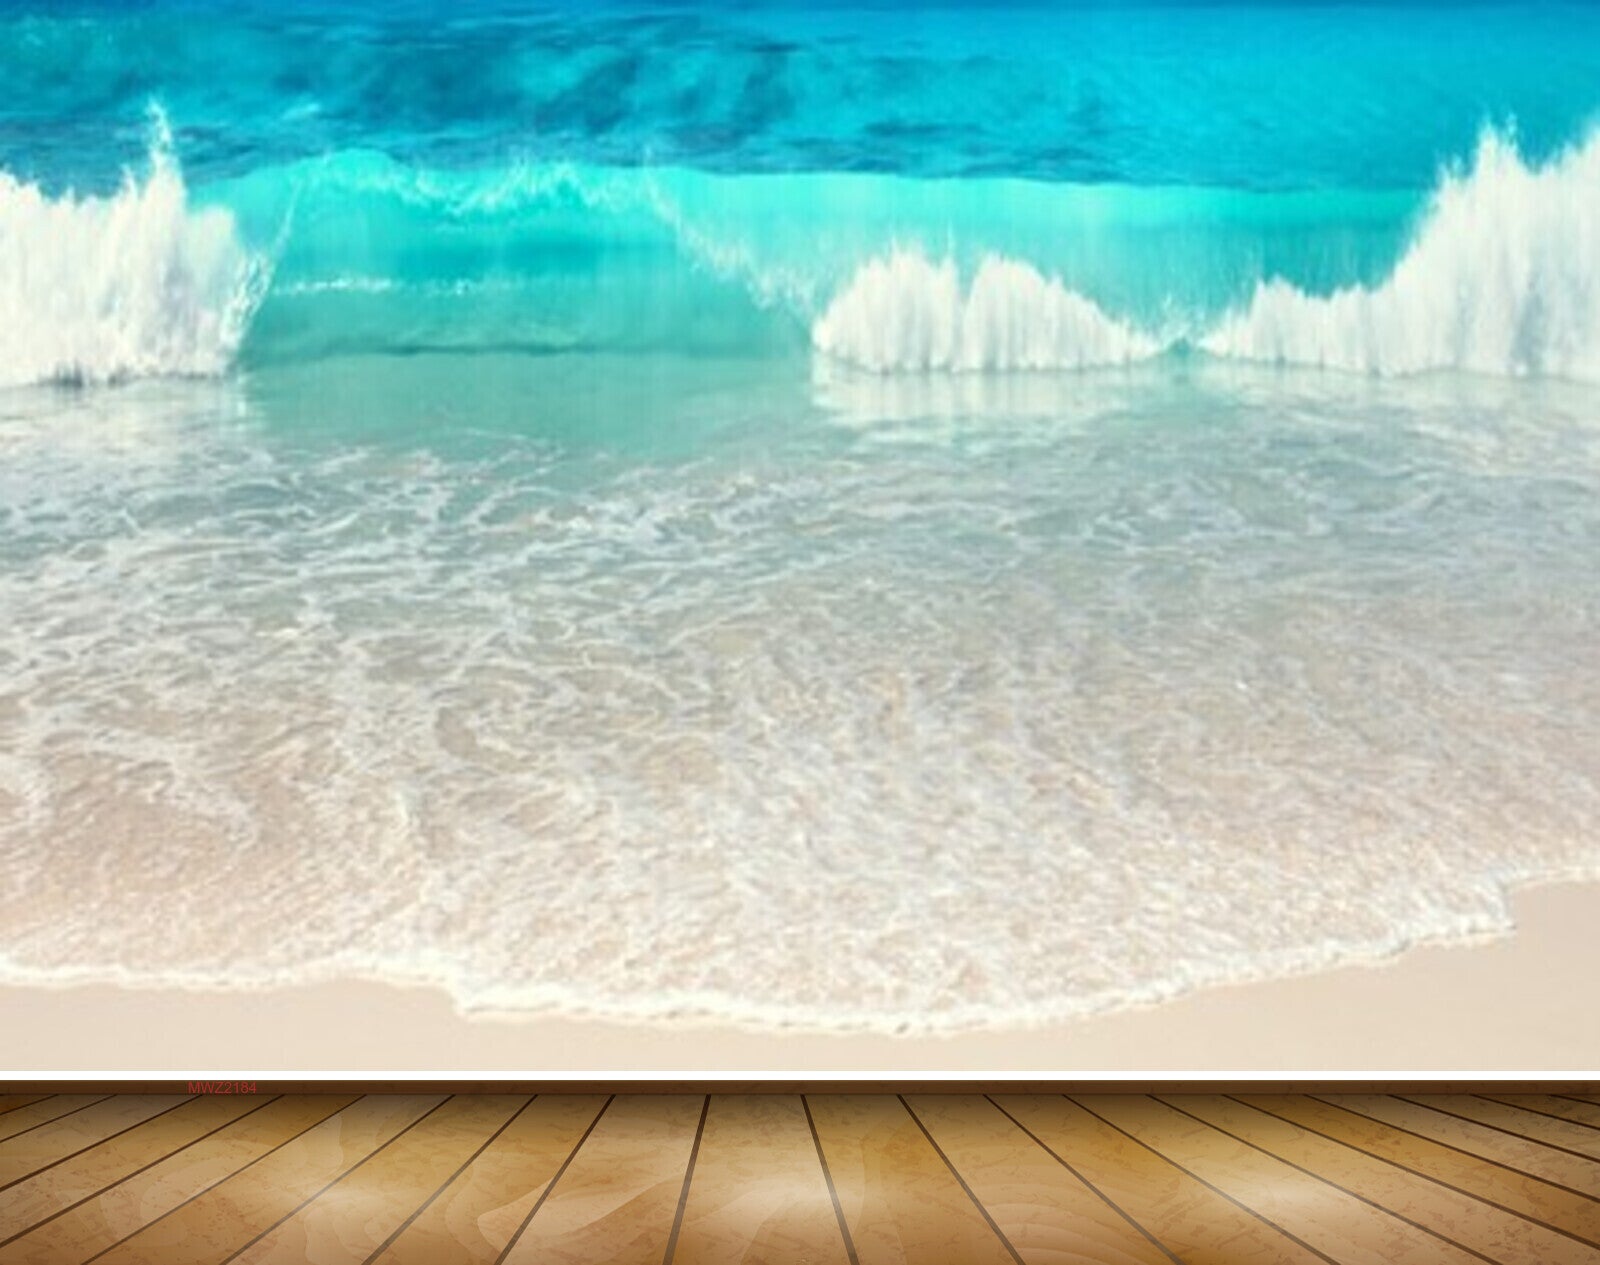 Ocean Backgrounds free download  PixelsTalkNet